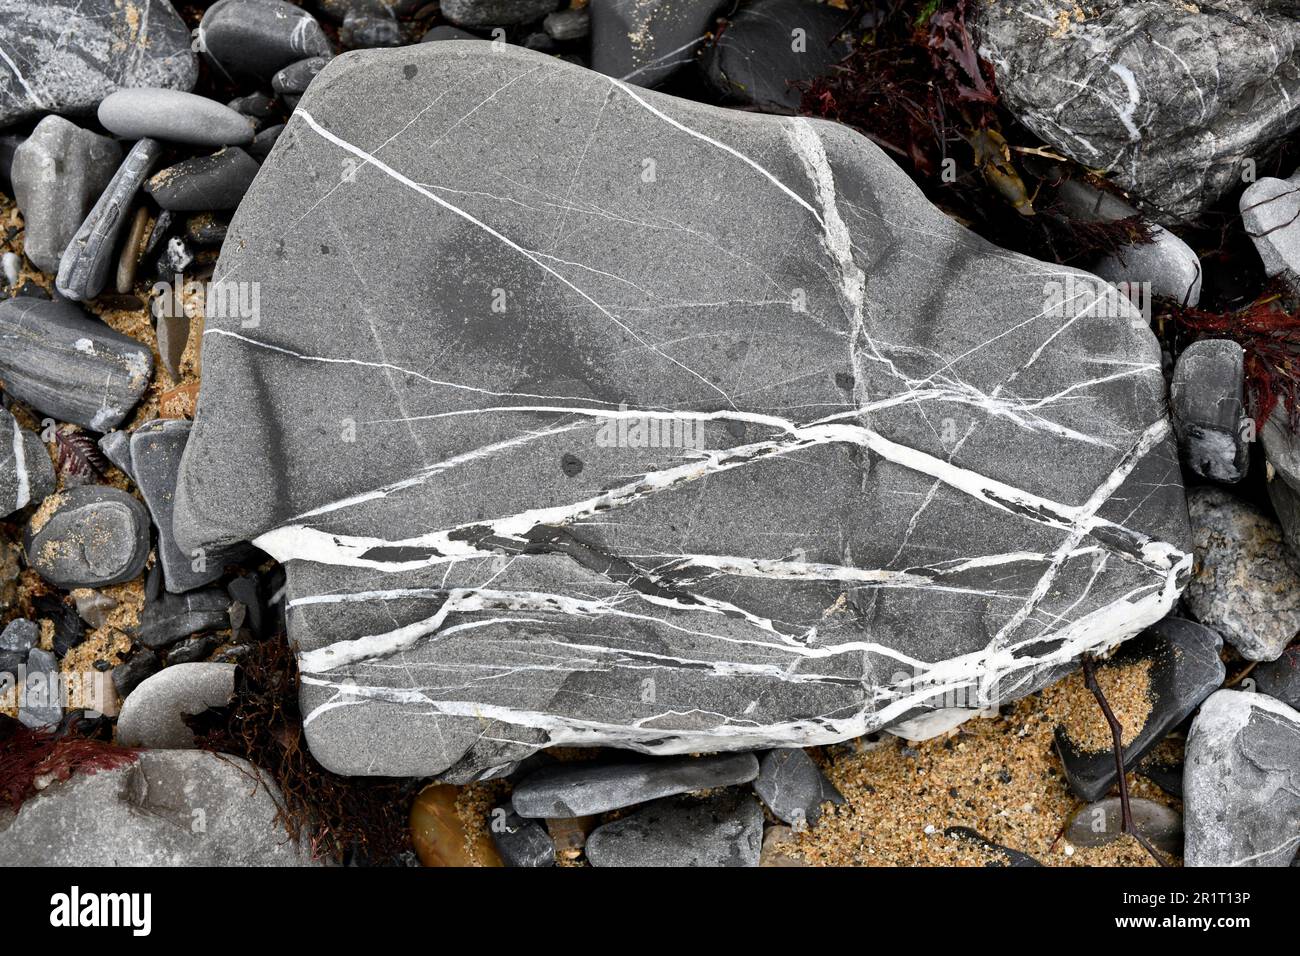 Limestone fragments with calcite veins. Saint Jean de luz, Aquitaine, France. Stock Photo